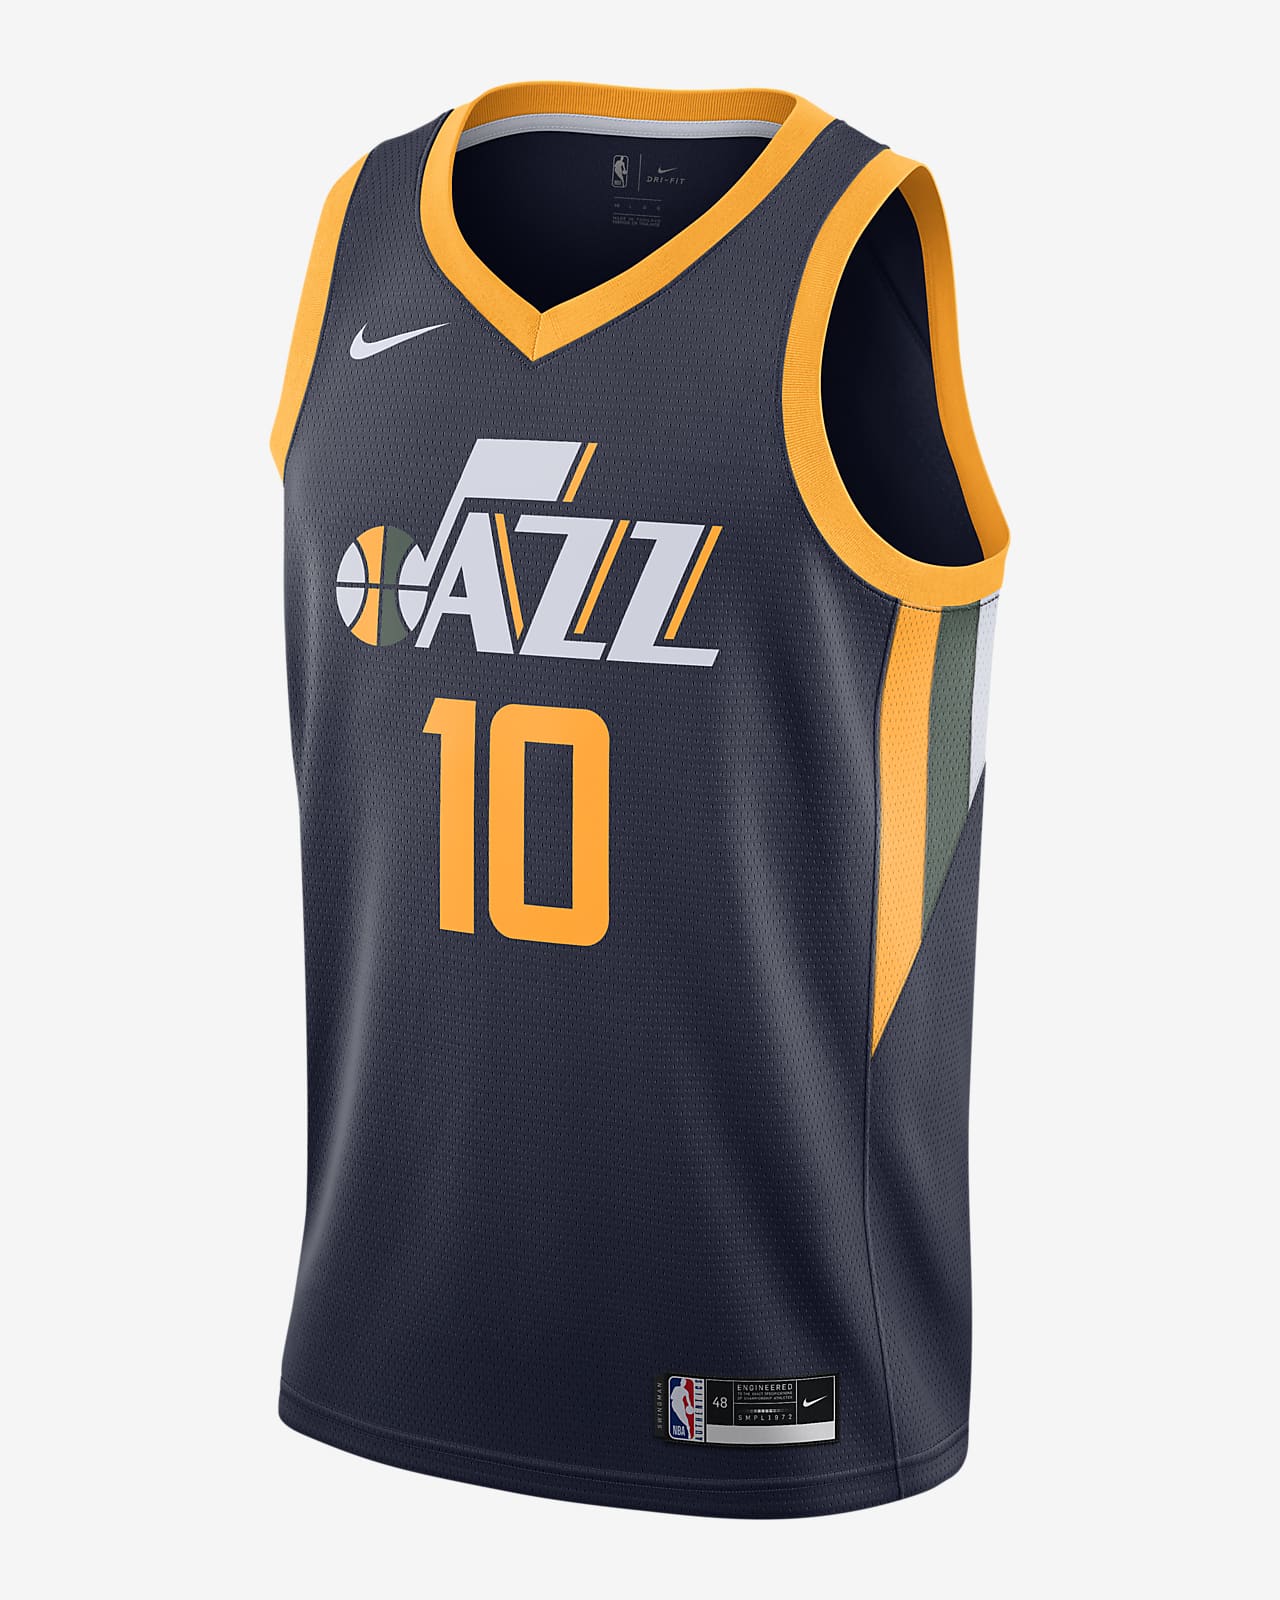 Sensación Exactitud Testificar Camiseta Nike NBA Swingman Mike Conley Jazz Icon Edition 2020. Nike.com